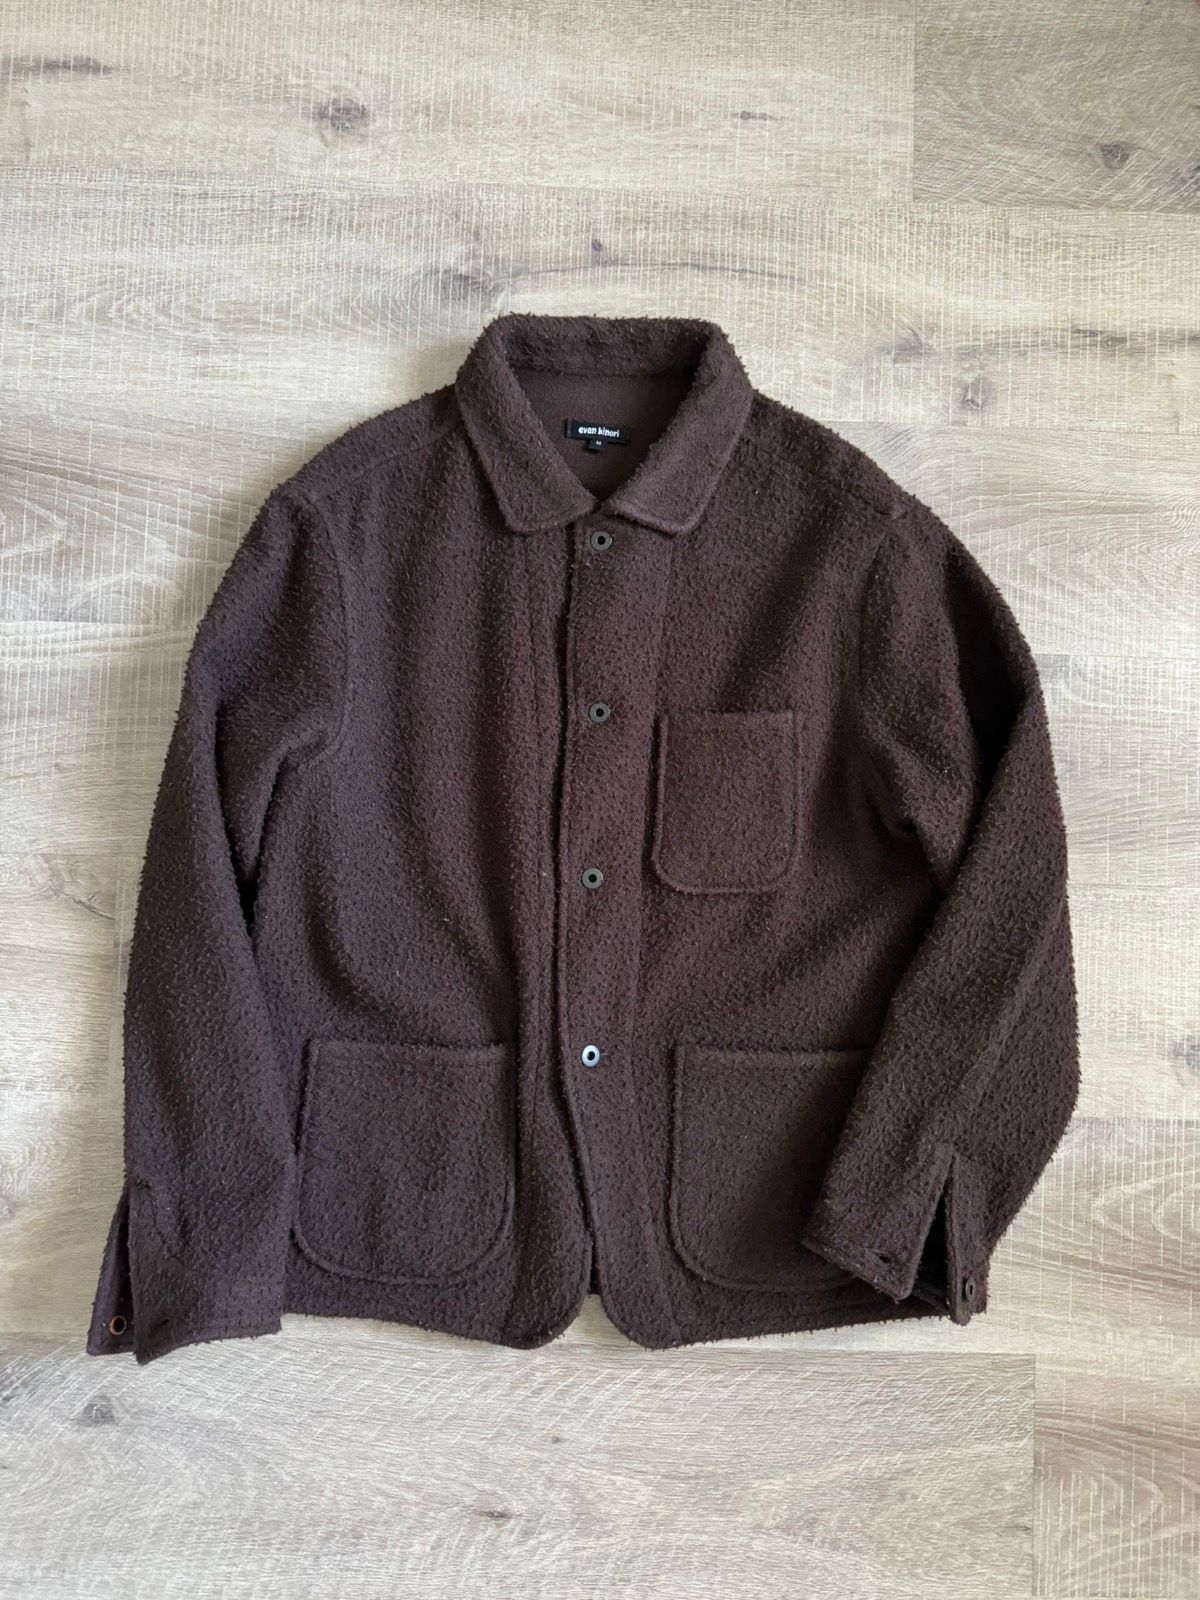 Pre-owned Evan Kinori Three Pocket Jacket Casentino Wool In Brown